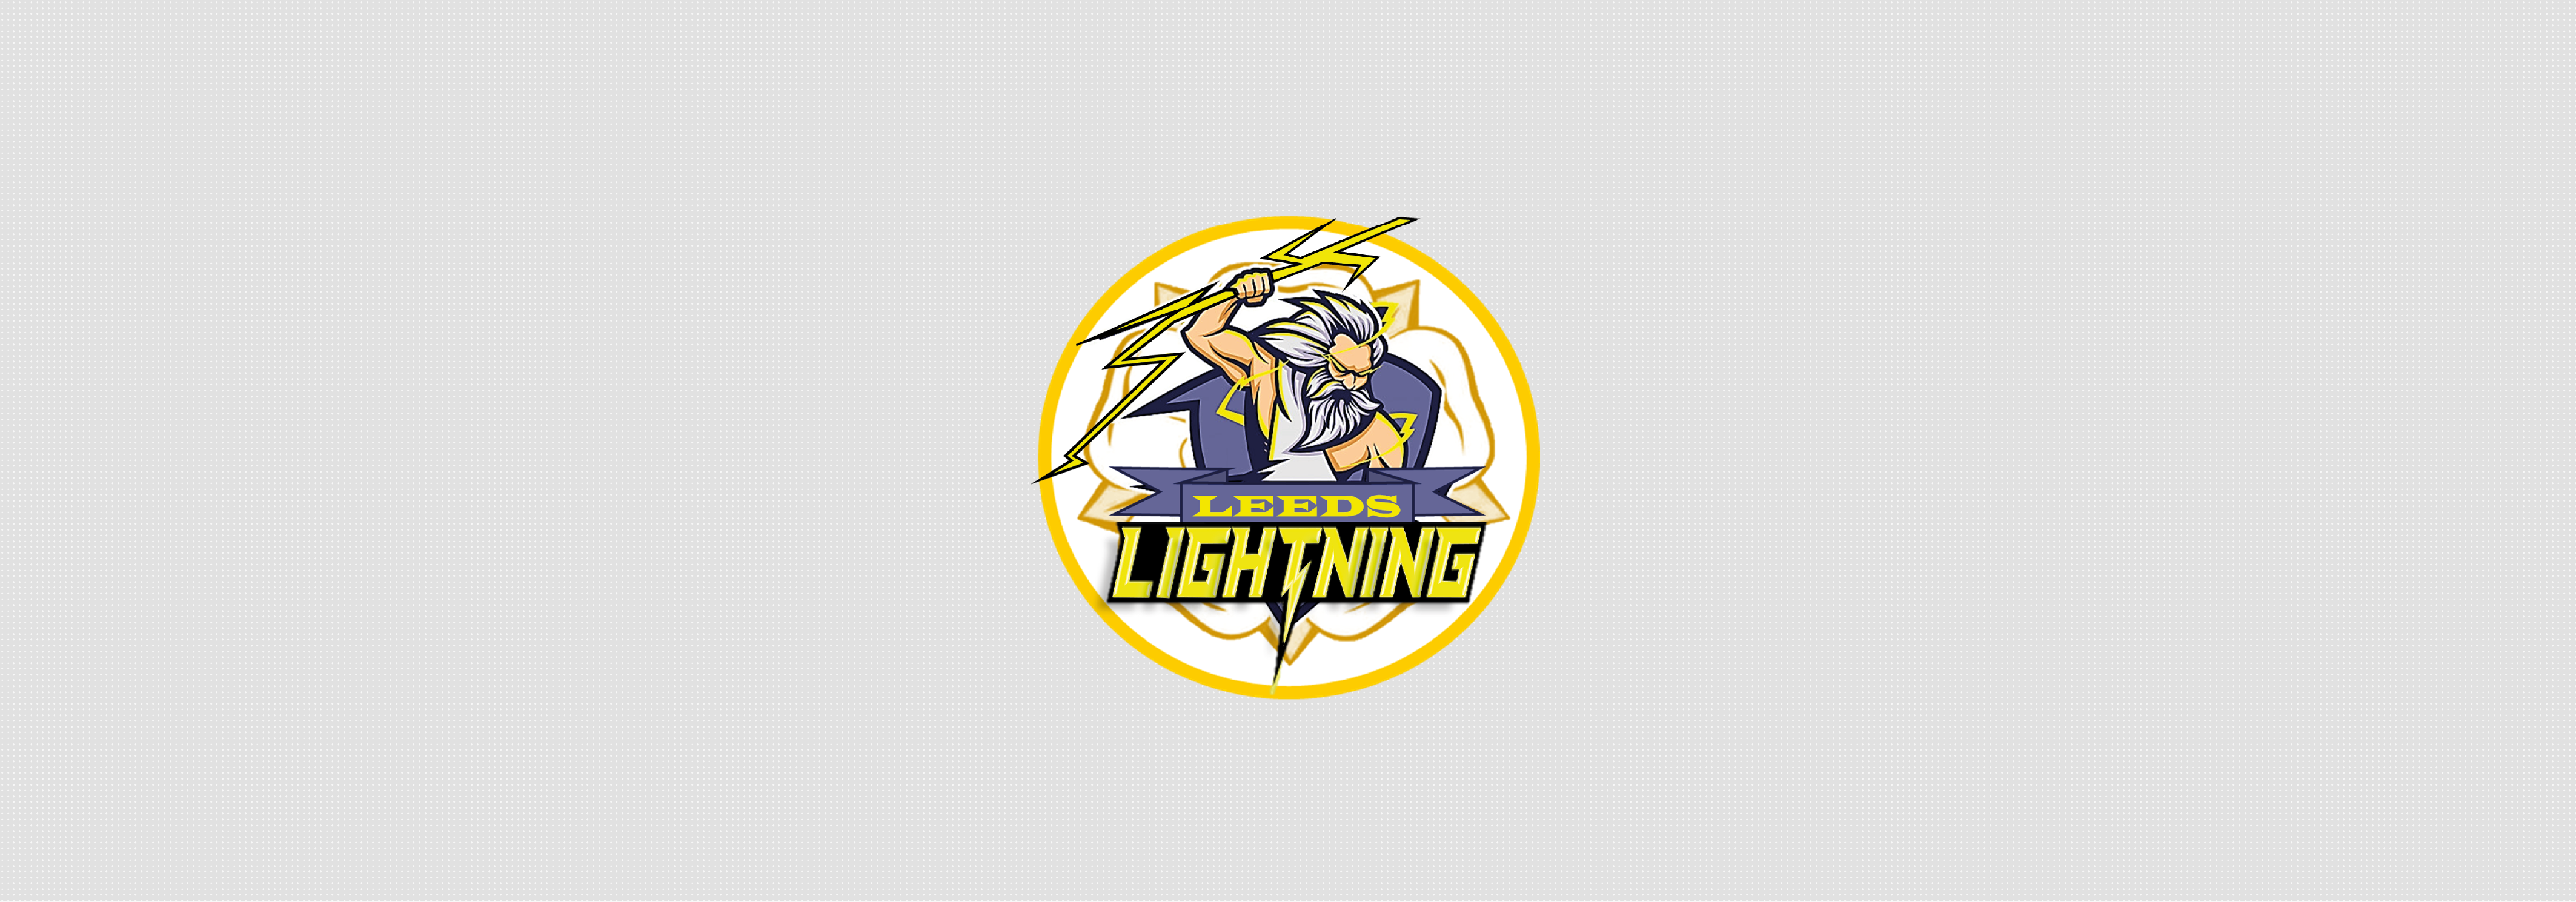 Leeds Lightning Training Jersey